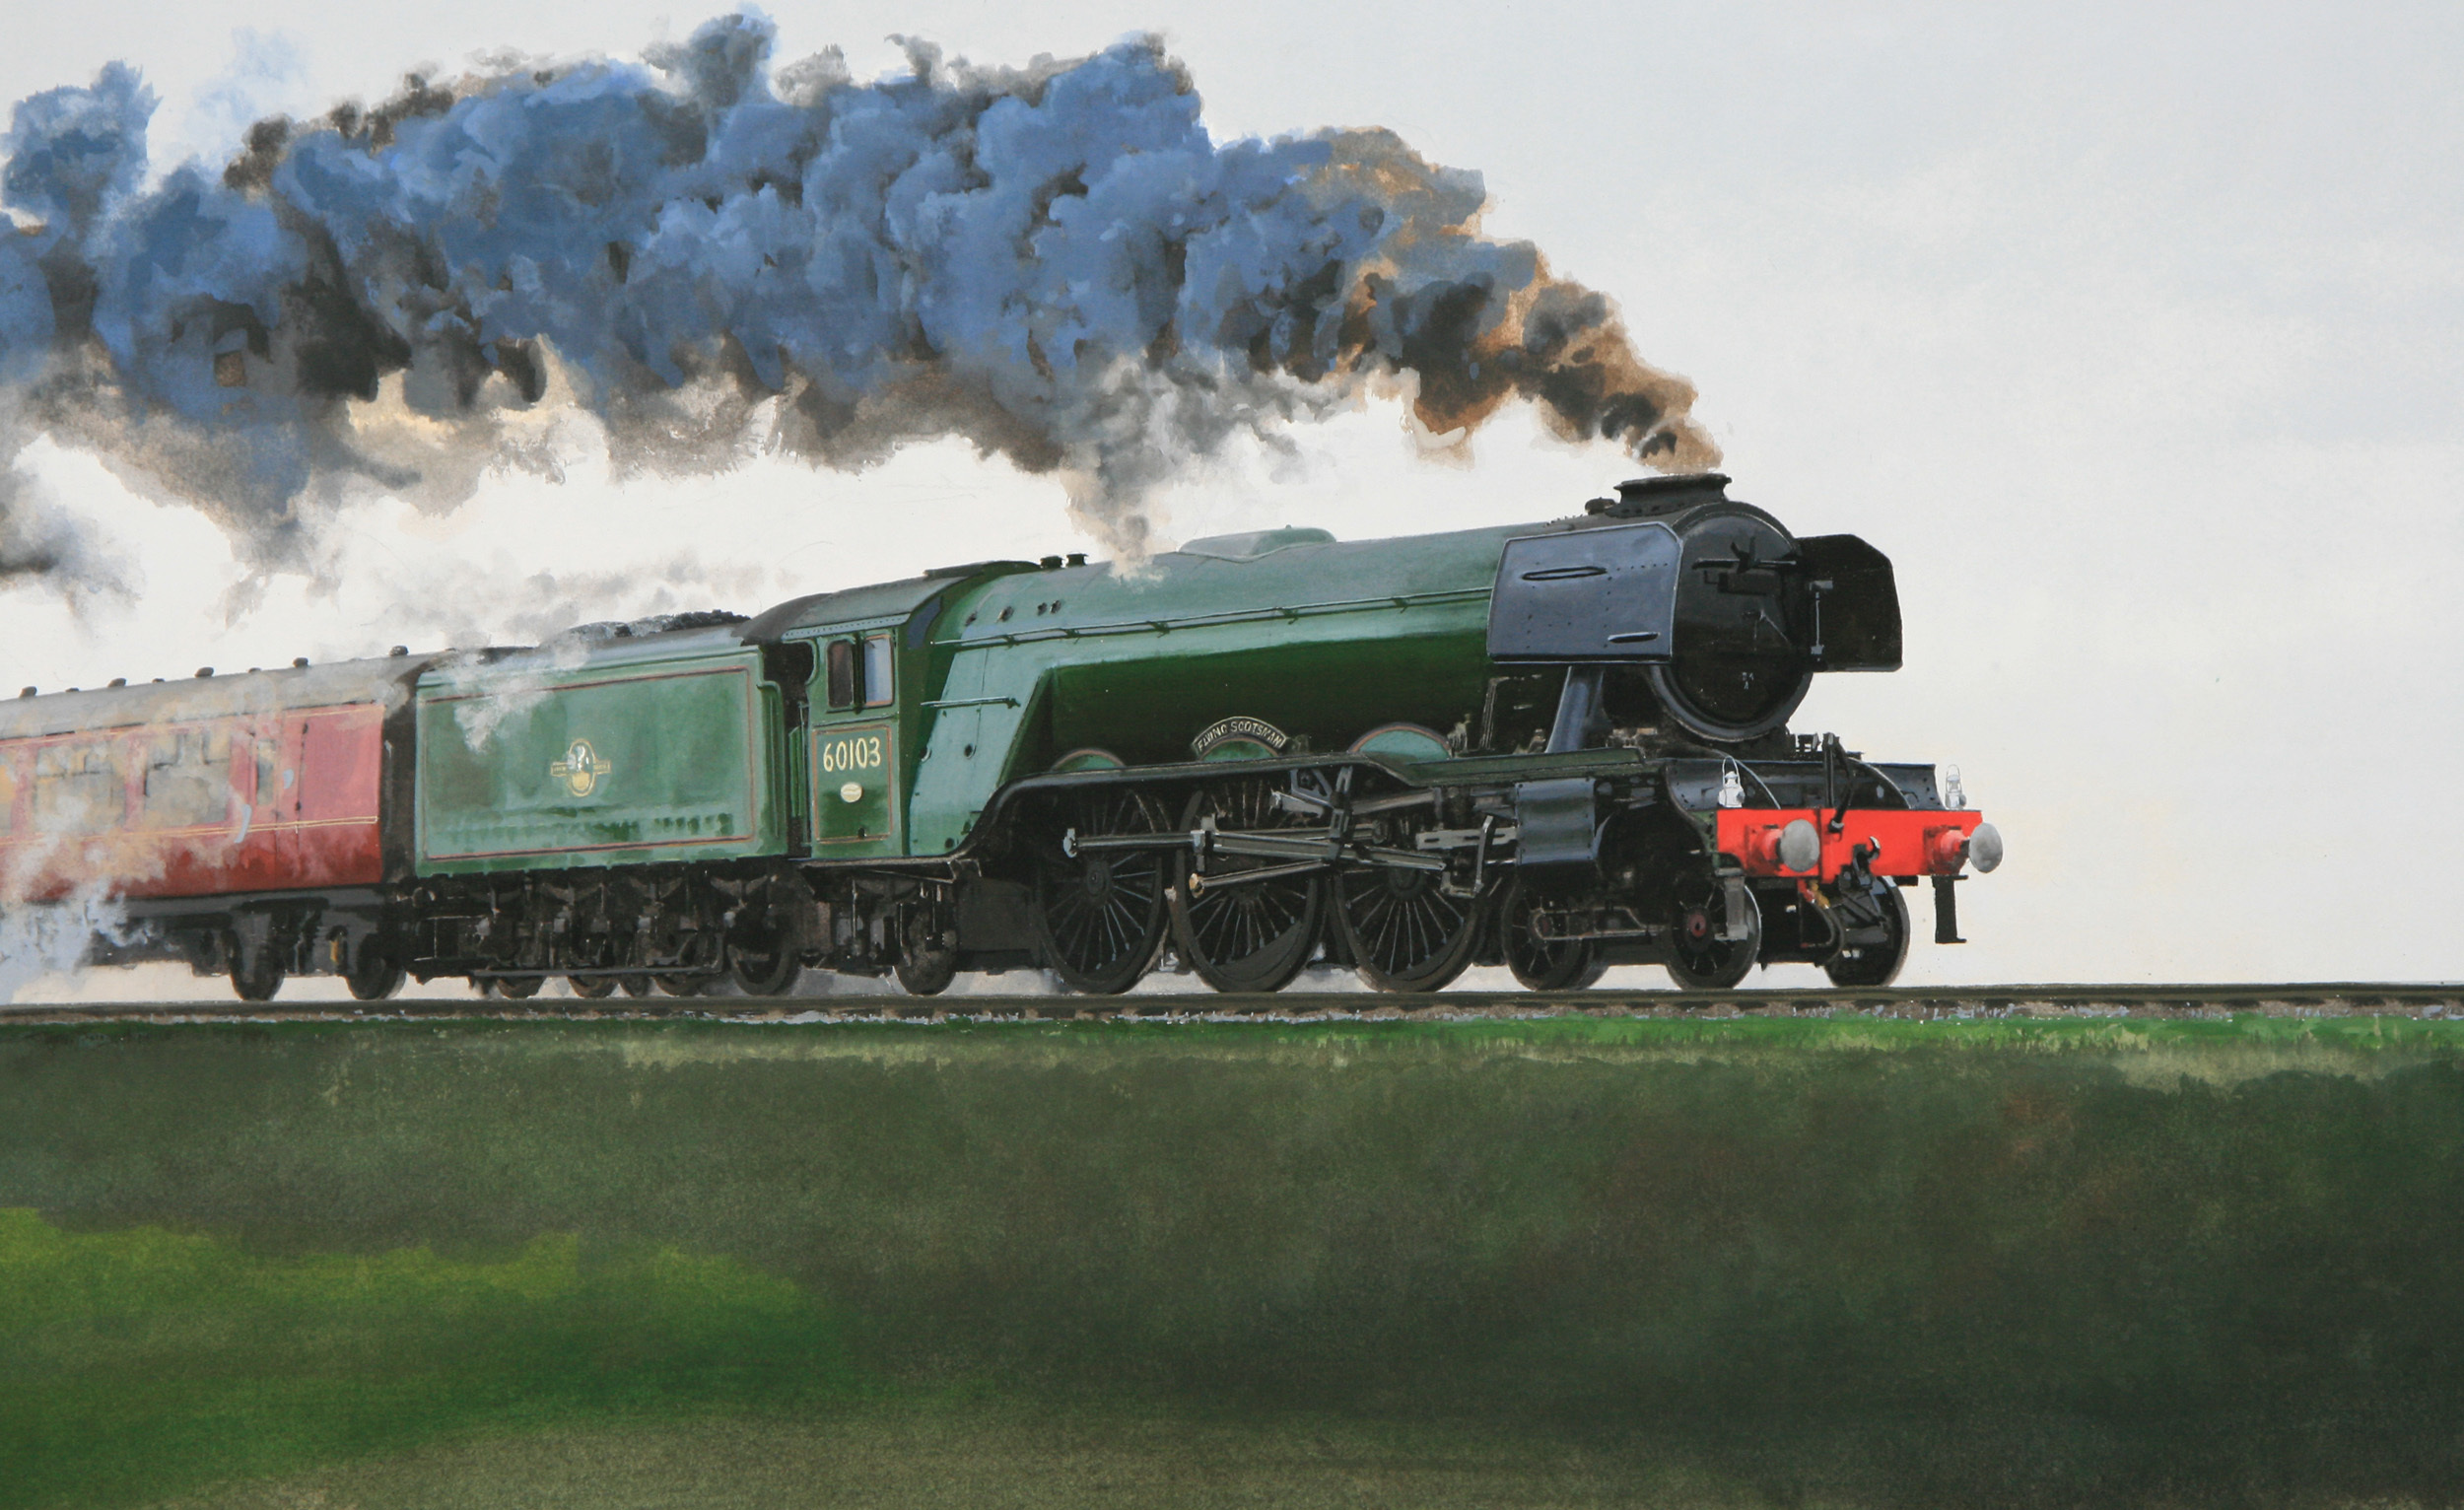 Locomotive Smoke Artistic 2500x1532